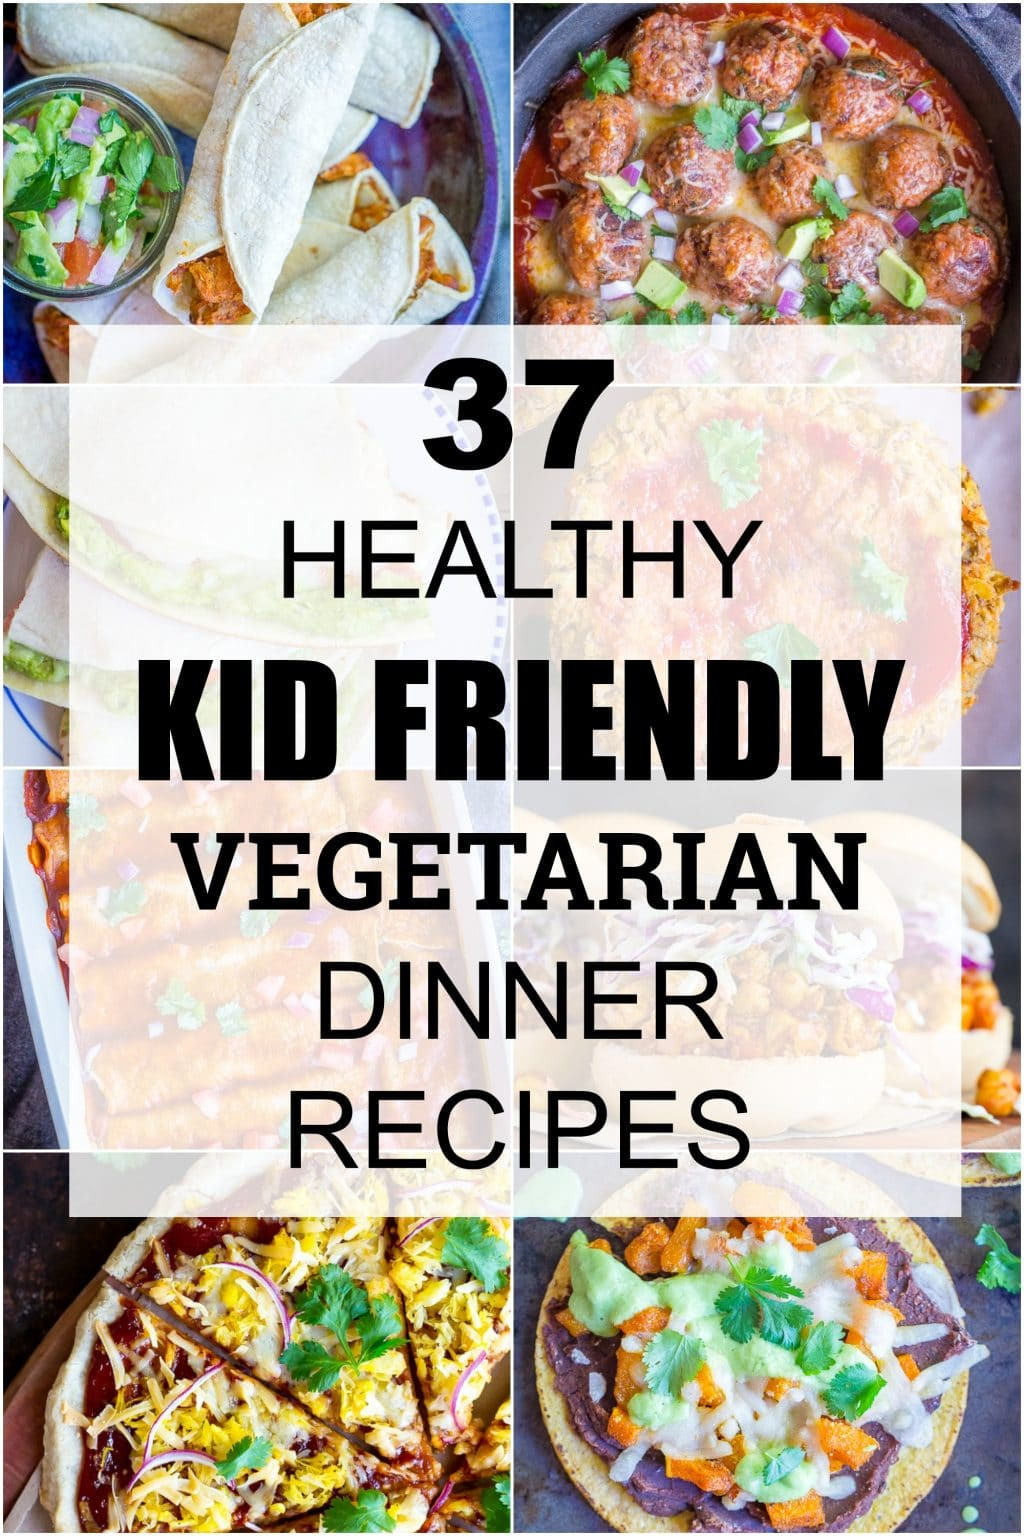 Easy Vegetarian Dinner Recipes
 37 Healthy Kid Friendly Ve arian Dinner Recipes She